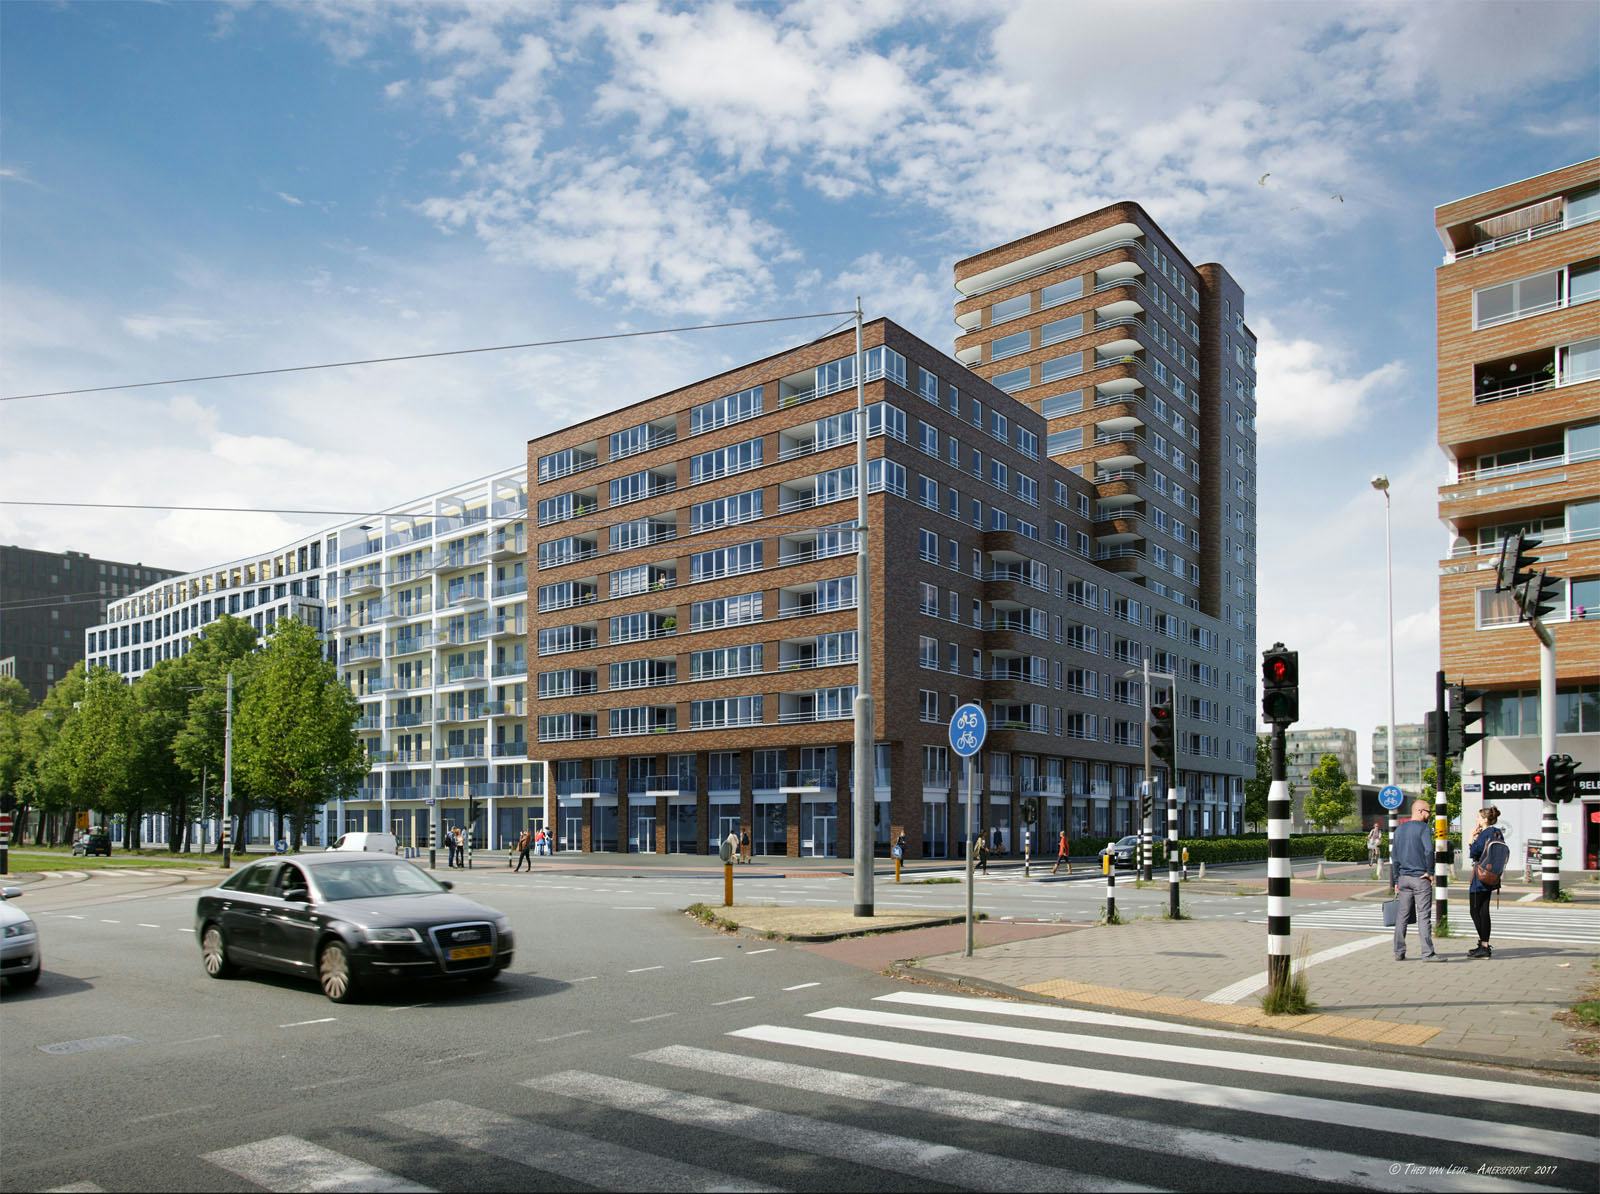 Impressie gevel appartementen hoek Jan van Galenstraat / Rinus Michelslaan (Impressie Theo van Leur)